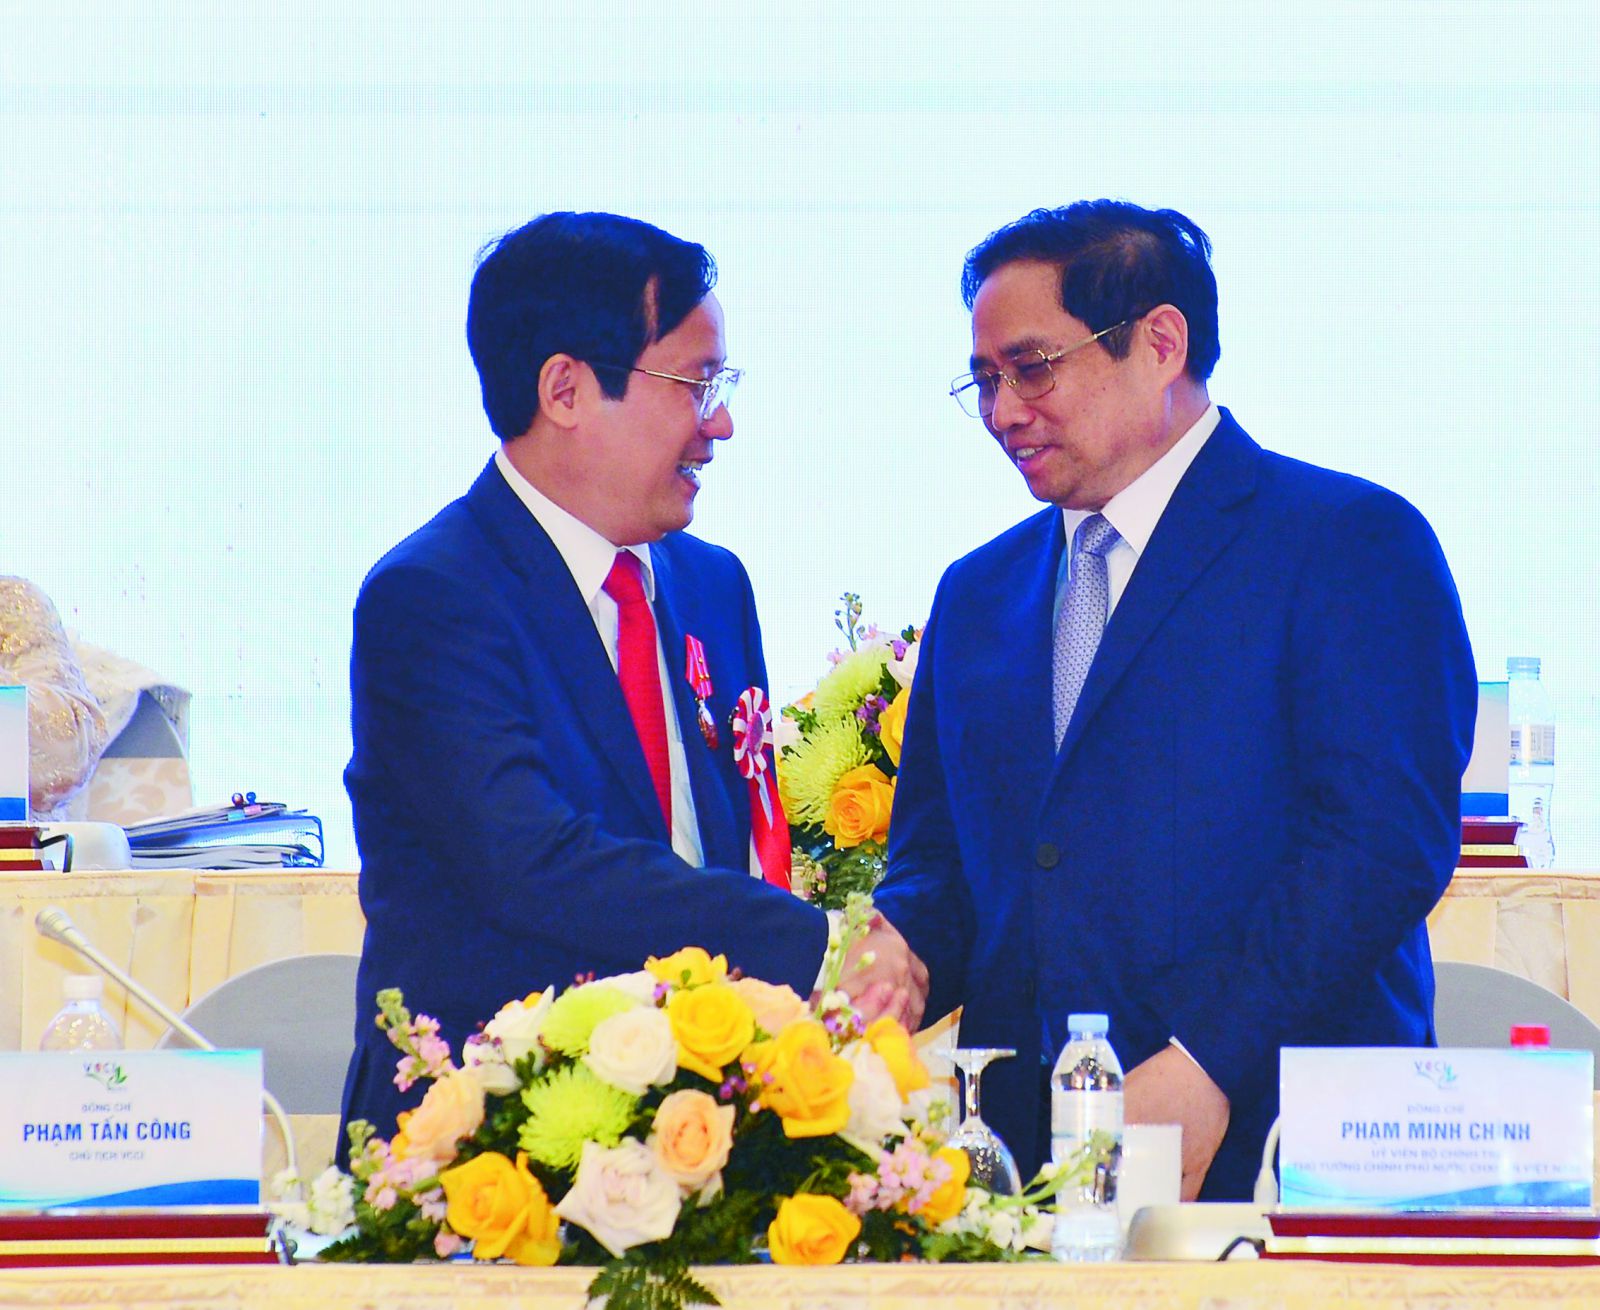 Thủ tướng Phạm Minh Chính và Chủ tịch VCCI Phạm Tấn Công tại Đại hội đại biểu toàn quốc VCCI.